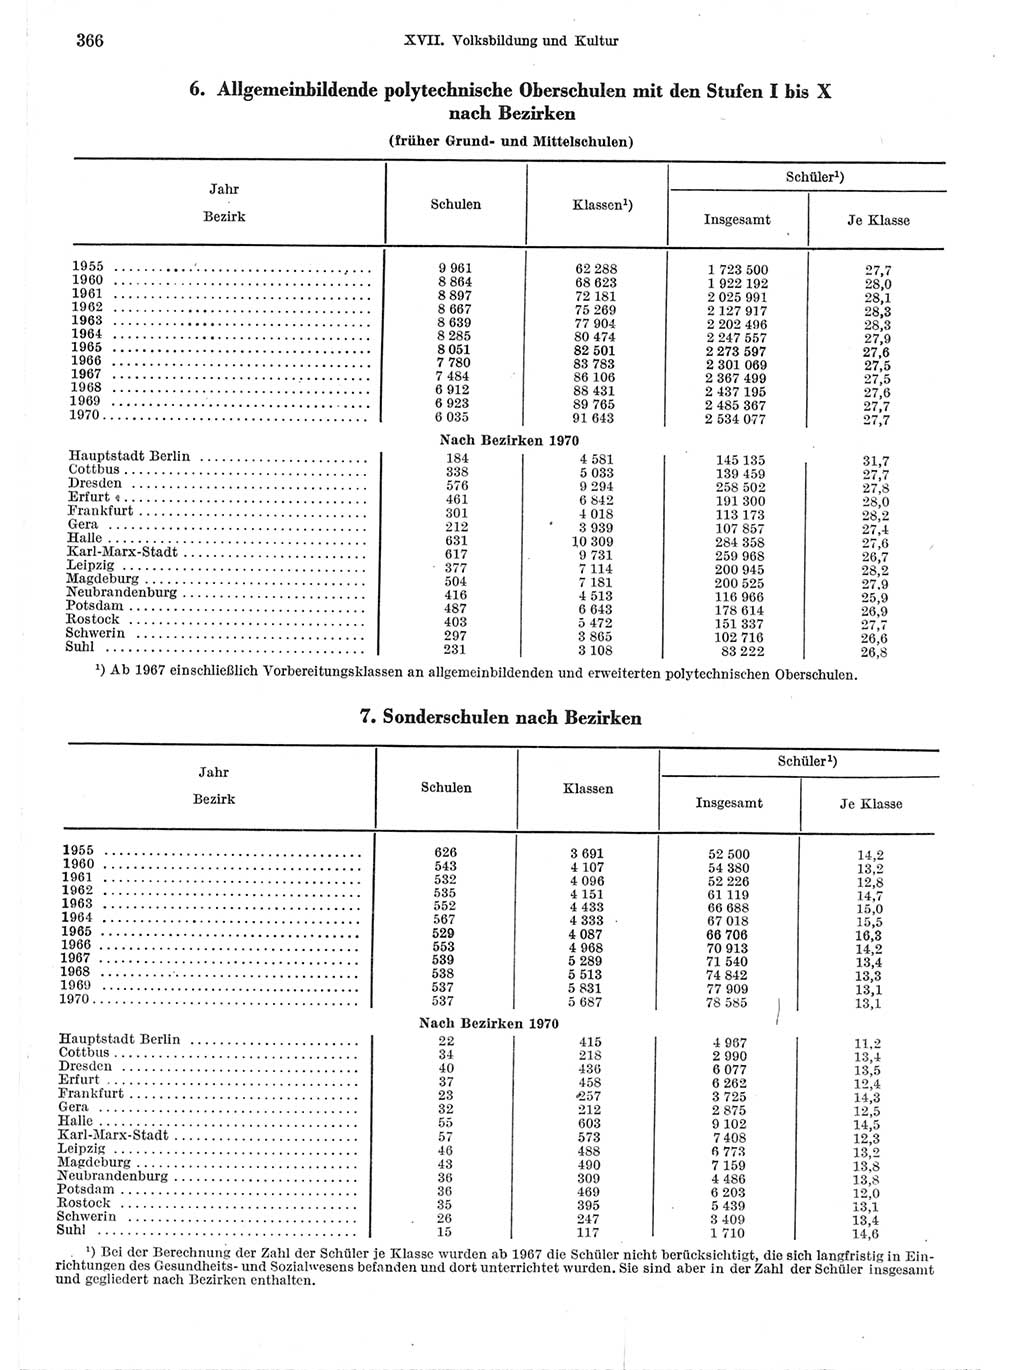 Statistisches Jahrbuch der Deutschen Demokratischen Republik (DDR) 1971, Seite 366 (Stat. Jb. DDR 1971, S. 366)